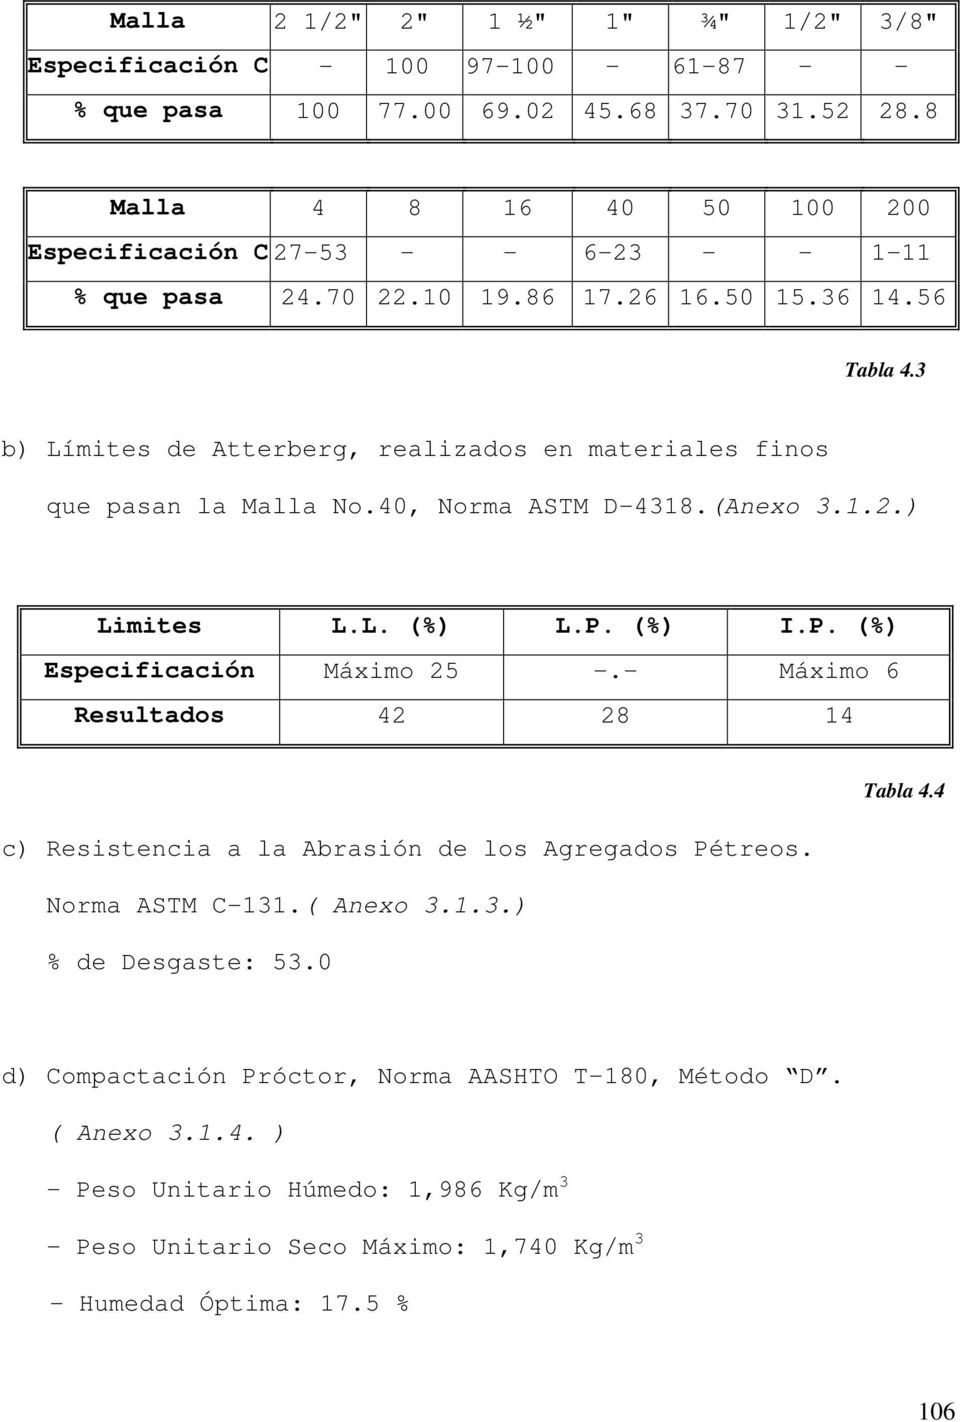 3 b) Límites de Atterberg, realizados en materiales finos que pasan la Malla No.40, Norma ASTM D-4318.(Anexo 3.1.2.) Limites L.L. (%) L.P. (%) I.P. (%) Especificación Máximo 25 -.